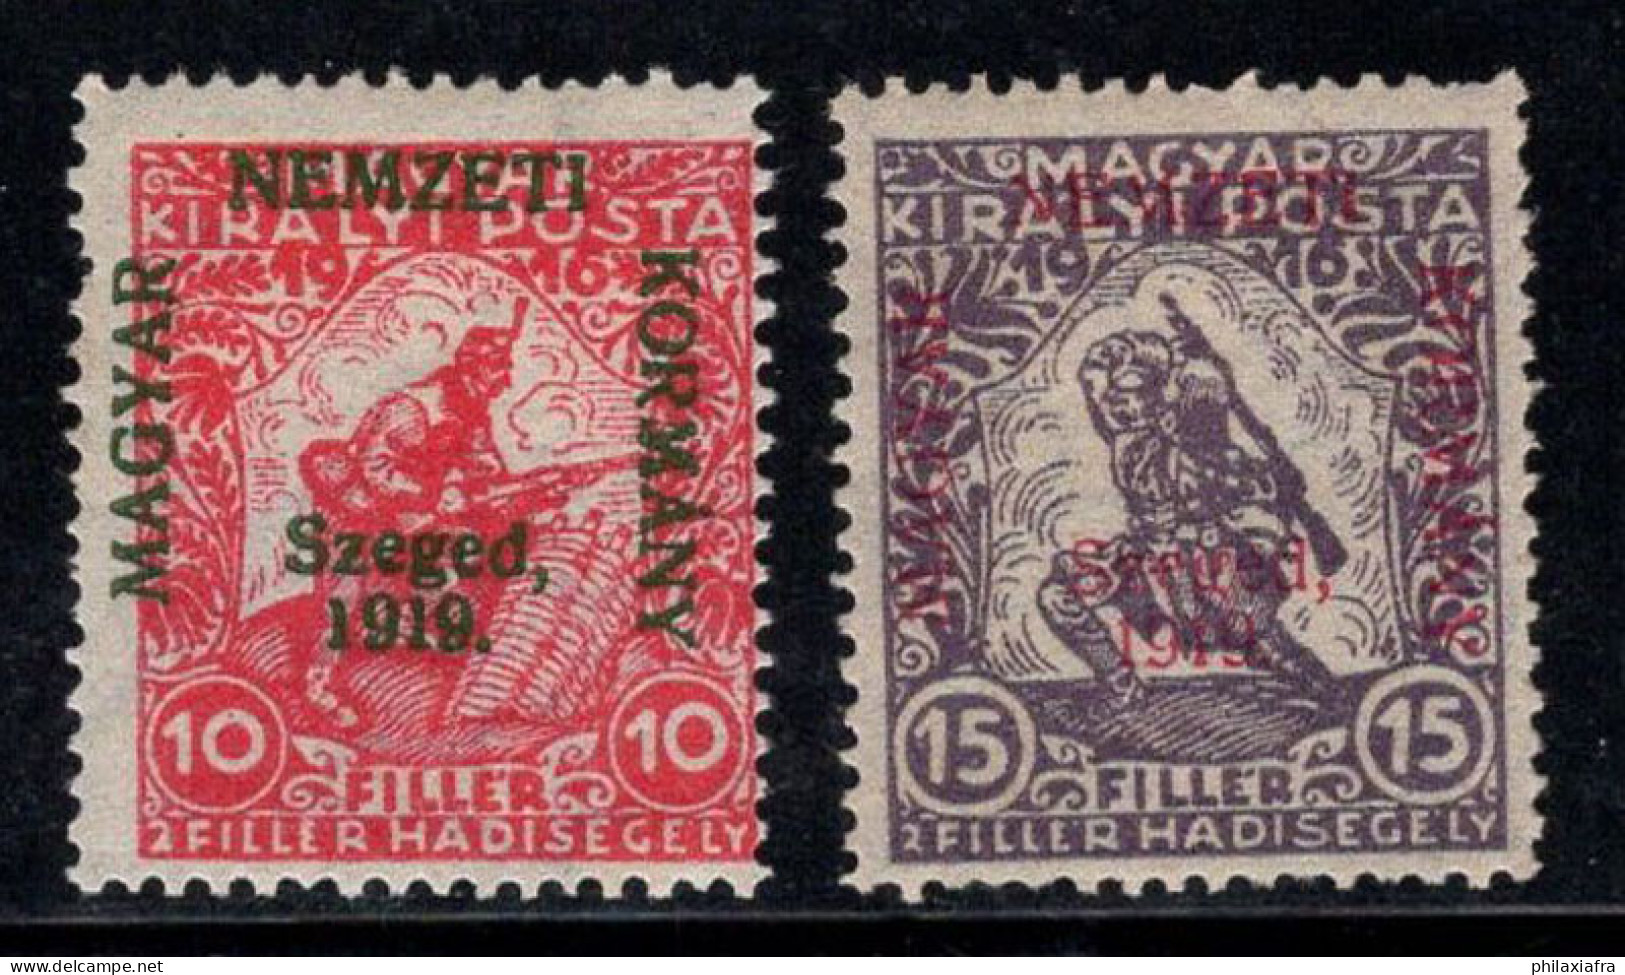 Hongrie 1919 Mi. 3-4 Neuf * MH 80% Szeged, Nemzeti - Szeged